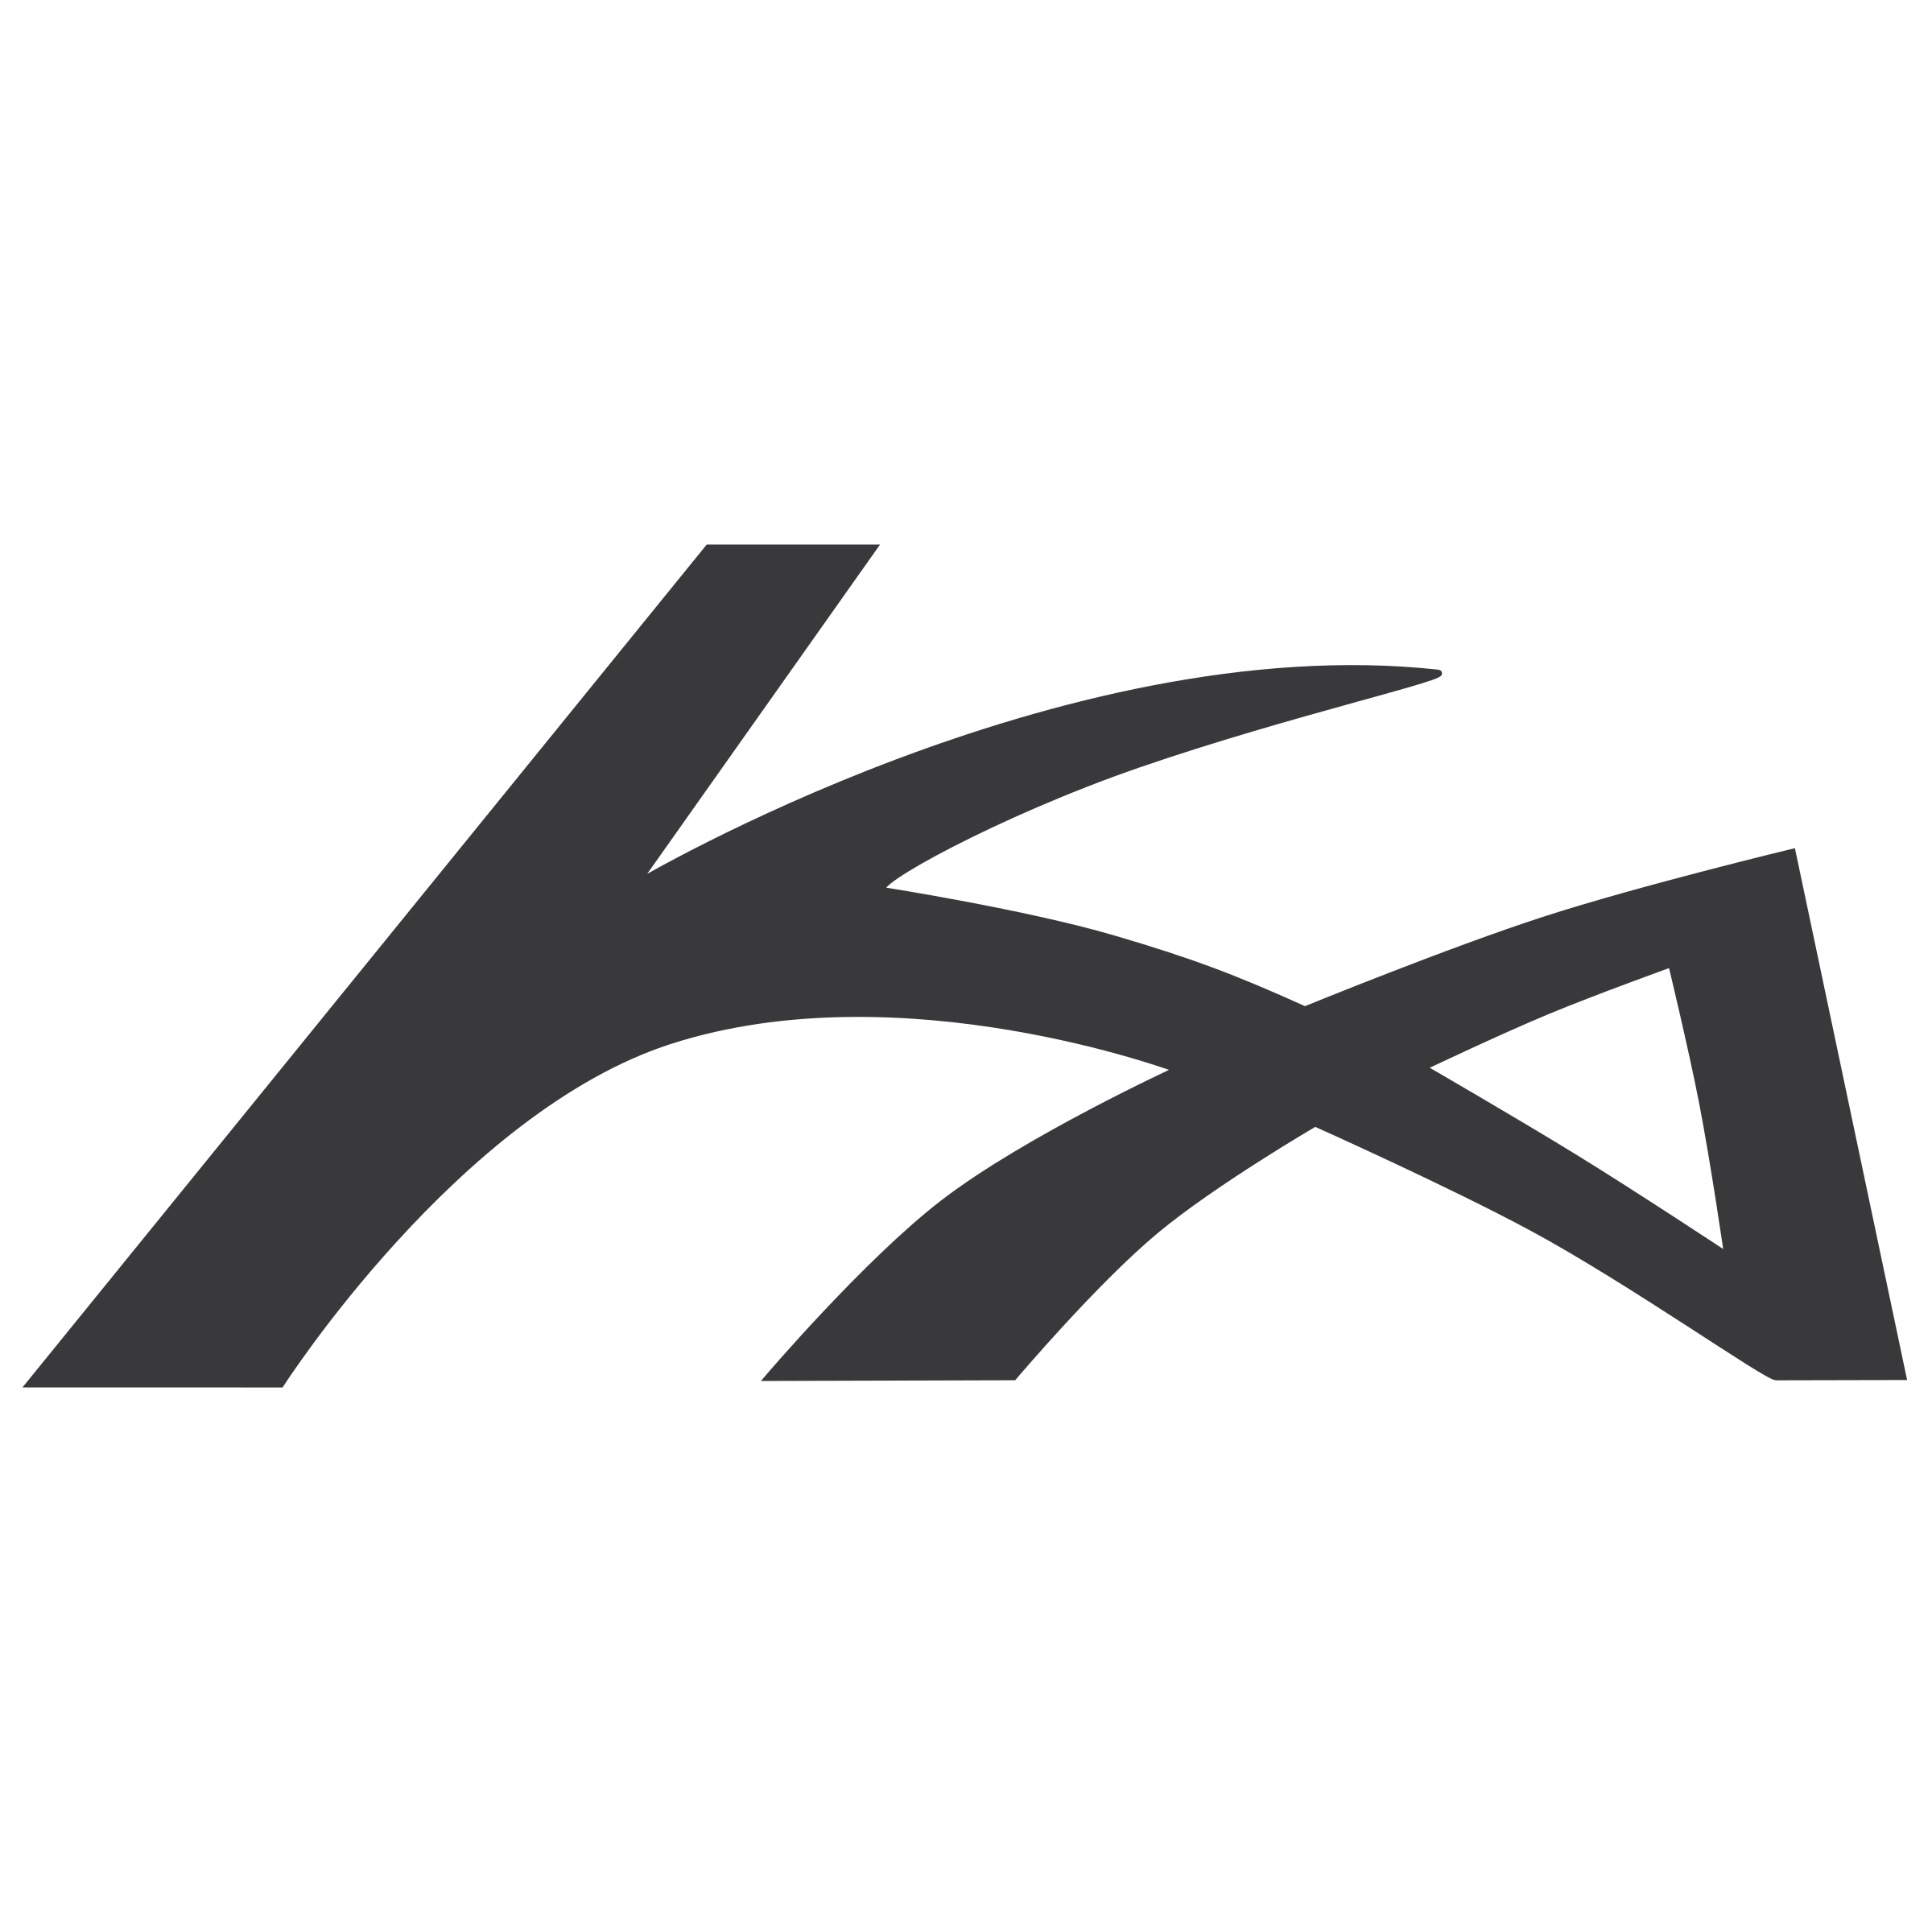 Ka Logo PNG Transparent & SVG Vector.